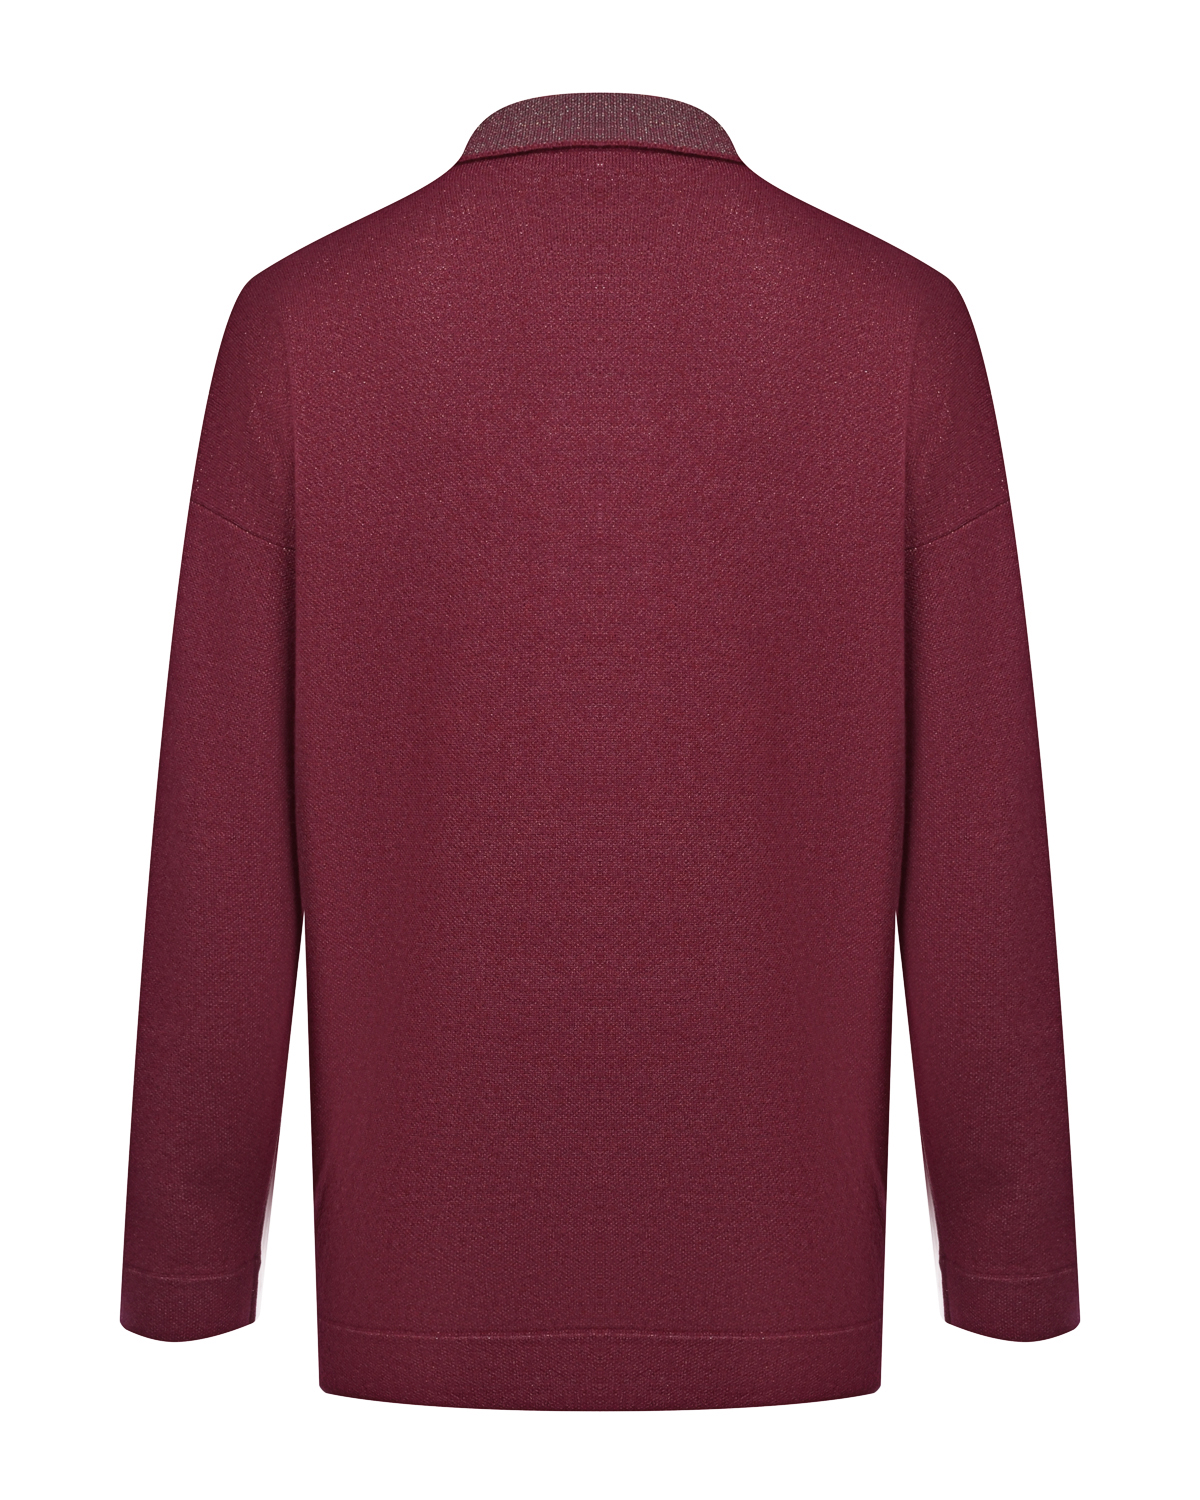 Бордовая рубашка из шерсти и шелка Panicale, размер 44, цвет бордовый - фото 5